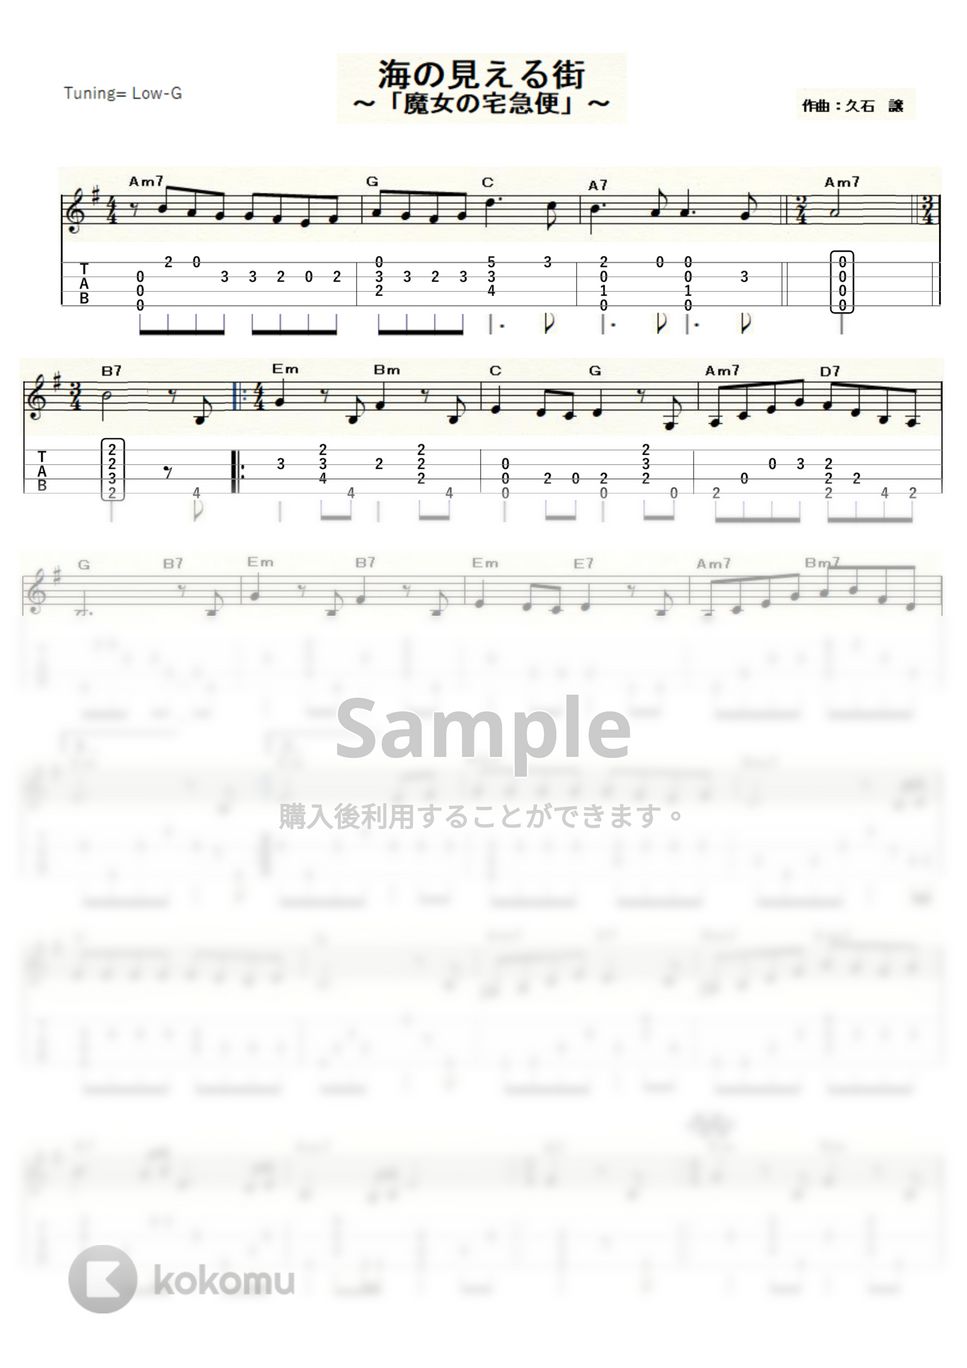 久石 譲 - 海の見える街～魔女の宅急便～ (ｳｸﾚﾚｿﾛ / Low-G / 中級) by ukulelepapa